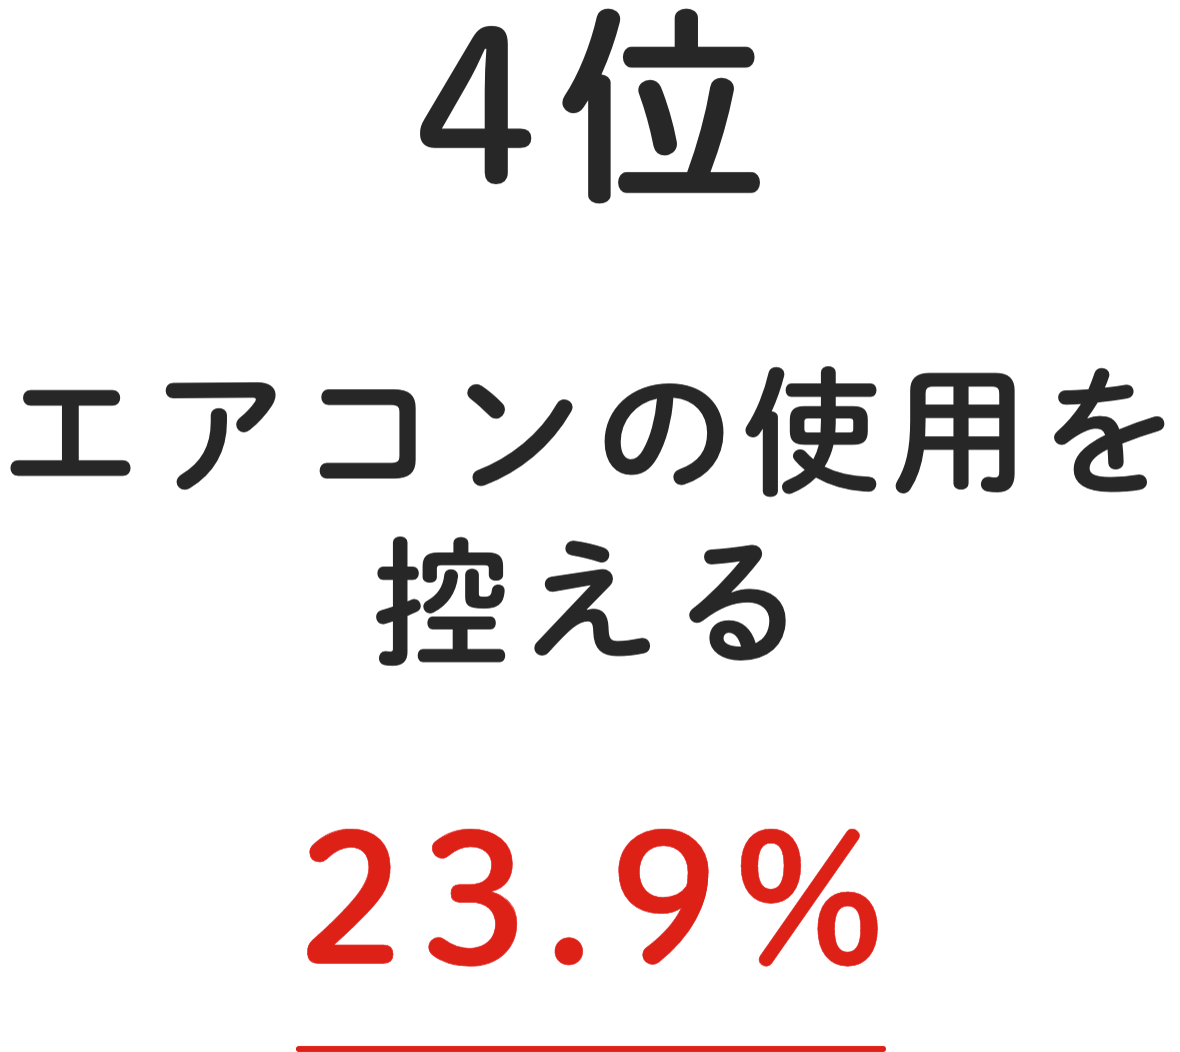 4位 エアコンの使用を控える 23.9%